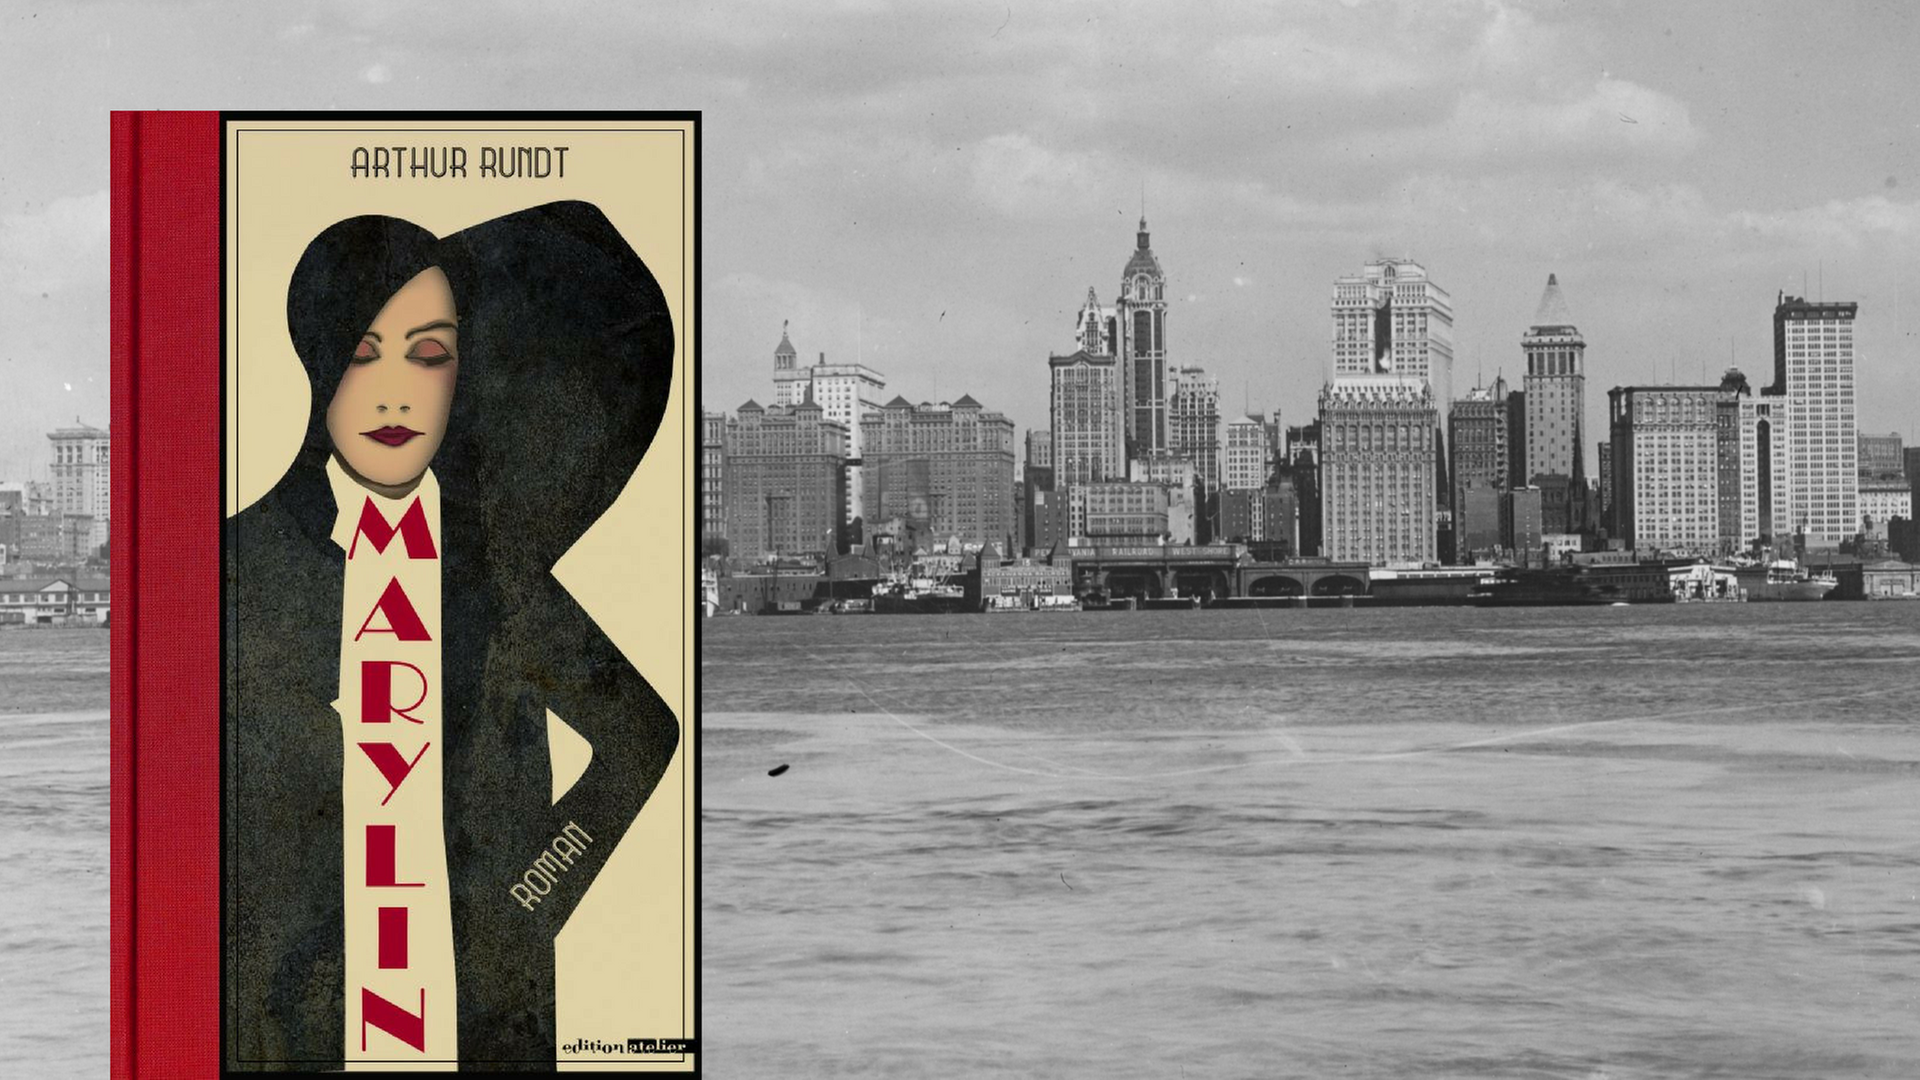 Buchcover: Arthur Rundt "Marylin". Im Hintergrund: die Skyline von New York in den 1920ern.